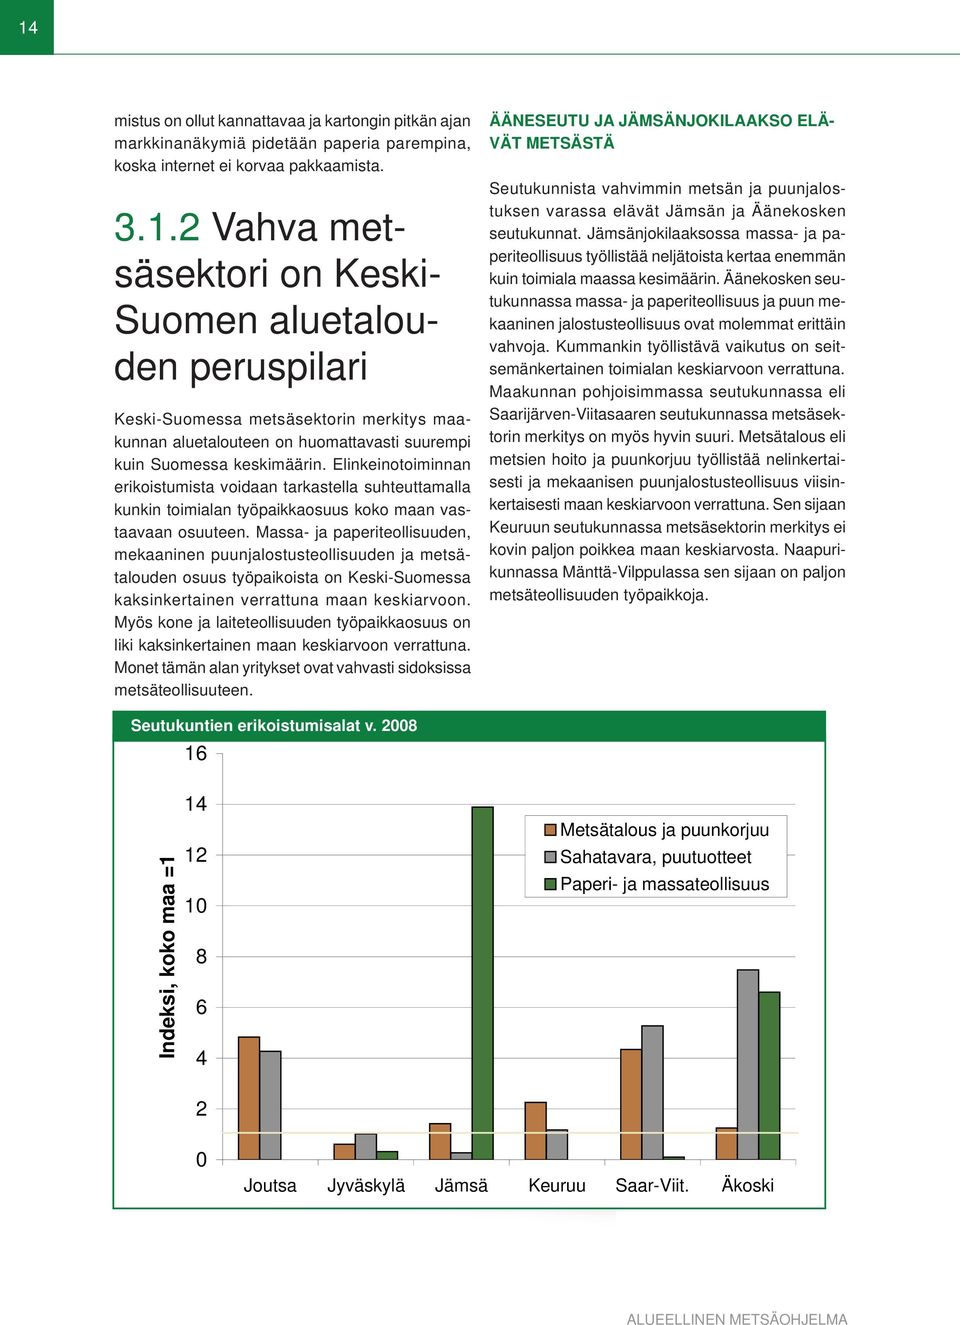 Massa- ja paperiteollisuuden, mekaaninen puunjalostusteollisuuden ja metsätalouden osuus työpaikoista on Keski-Suomessa kaksinkertainen verrattuna maan keskiarvoon.